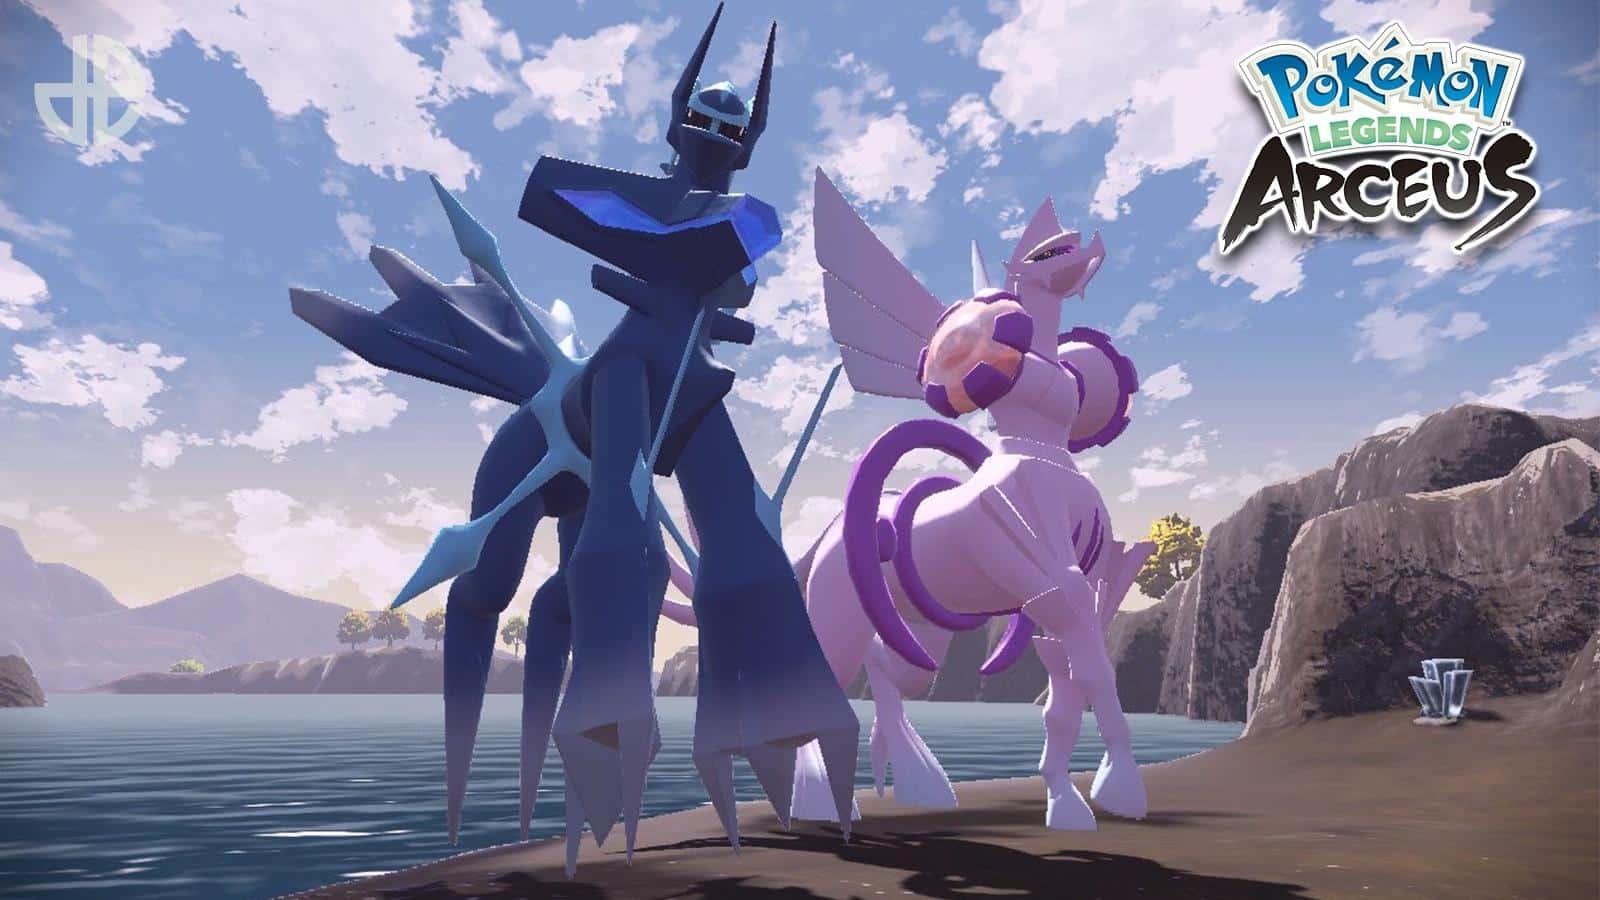 Capturing the Legendary Pokémon Palkia in Pixelmon! Episode: 23 